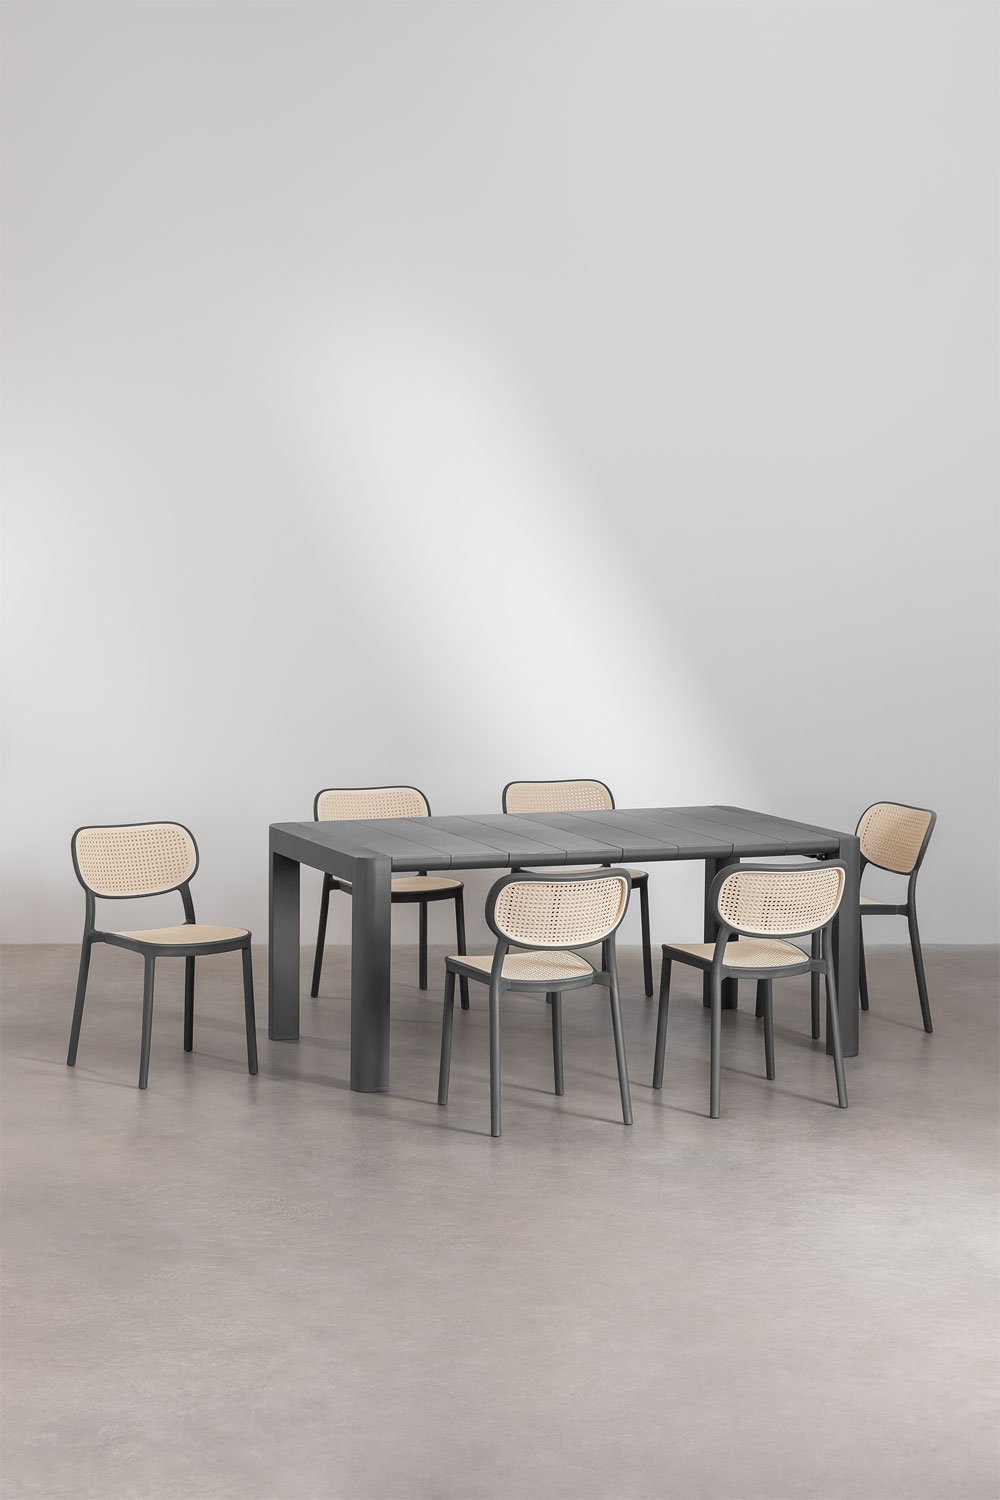 Arnadine rechthoekige tafelset (180x100 cm) en 6 Omara stapelbare eetkamerstoelen, galerij beeld 1